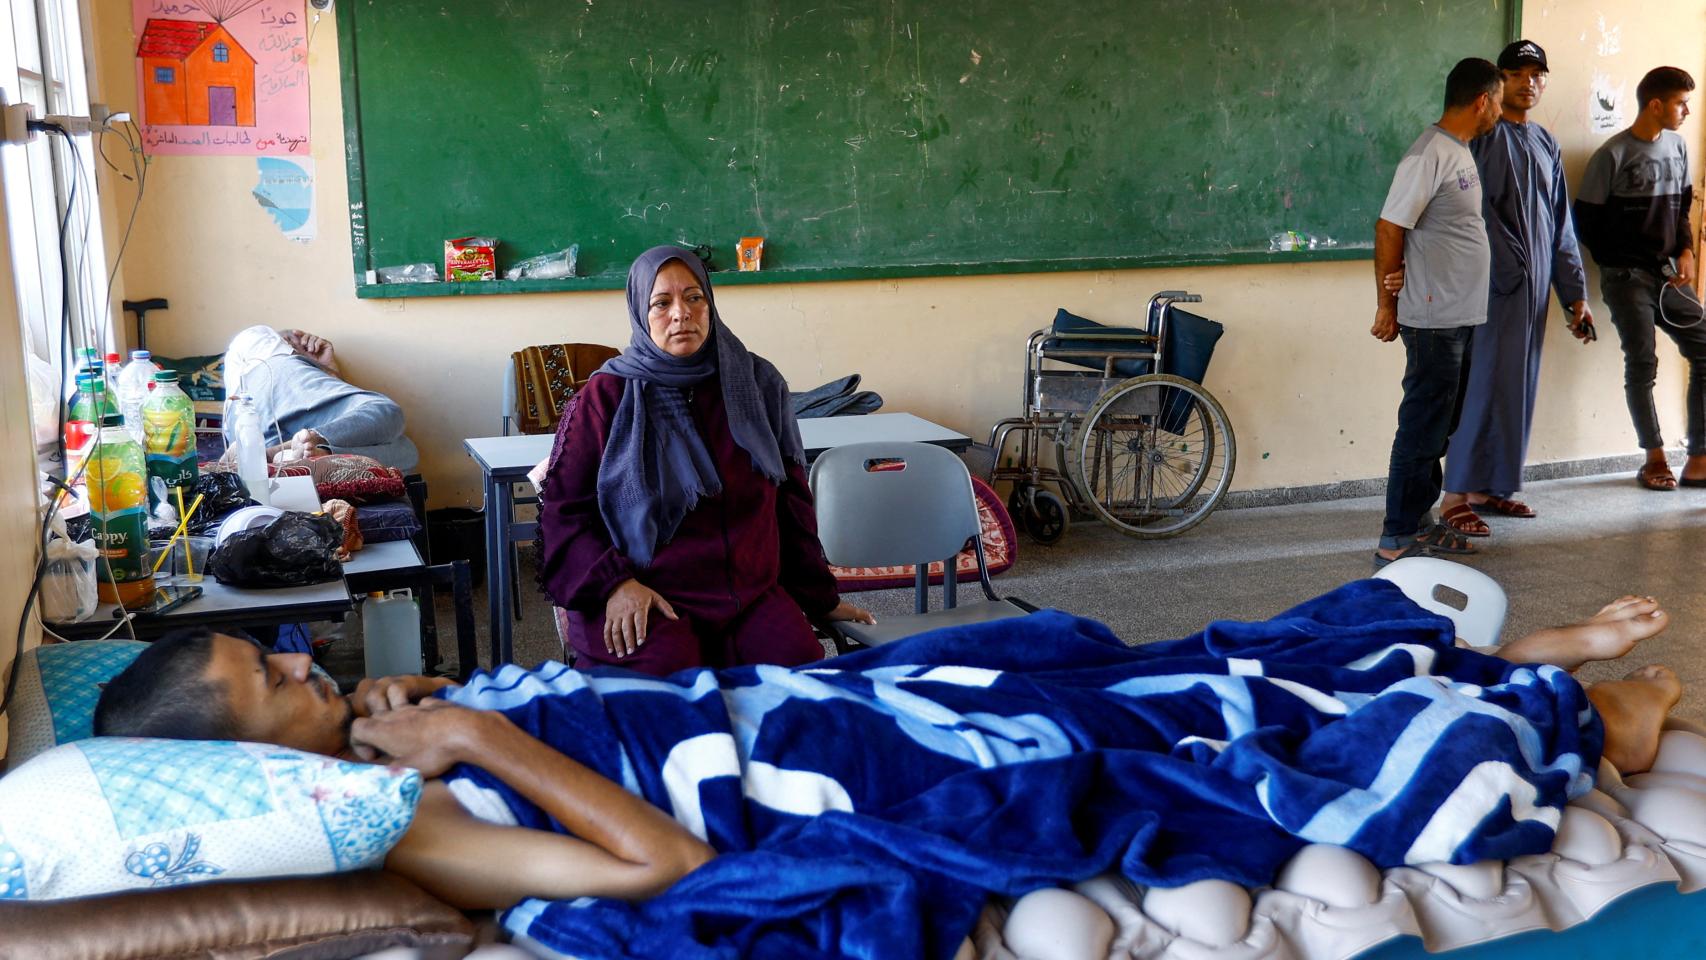 Un chico yace en una cama con su madre a su lado, en una escuela convertida en refugio de Jan Yunis (Franja de Gaza).